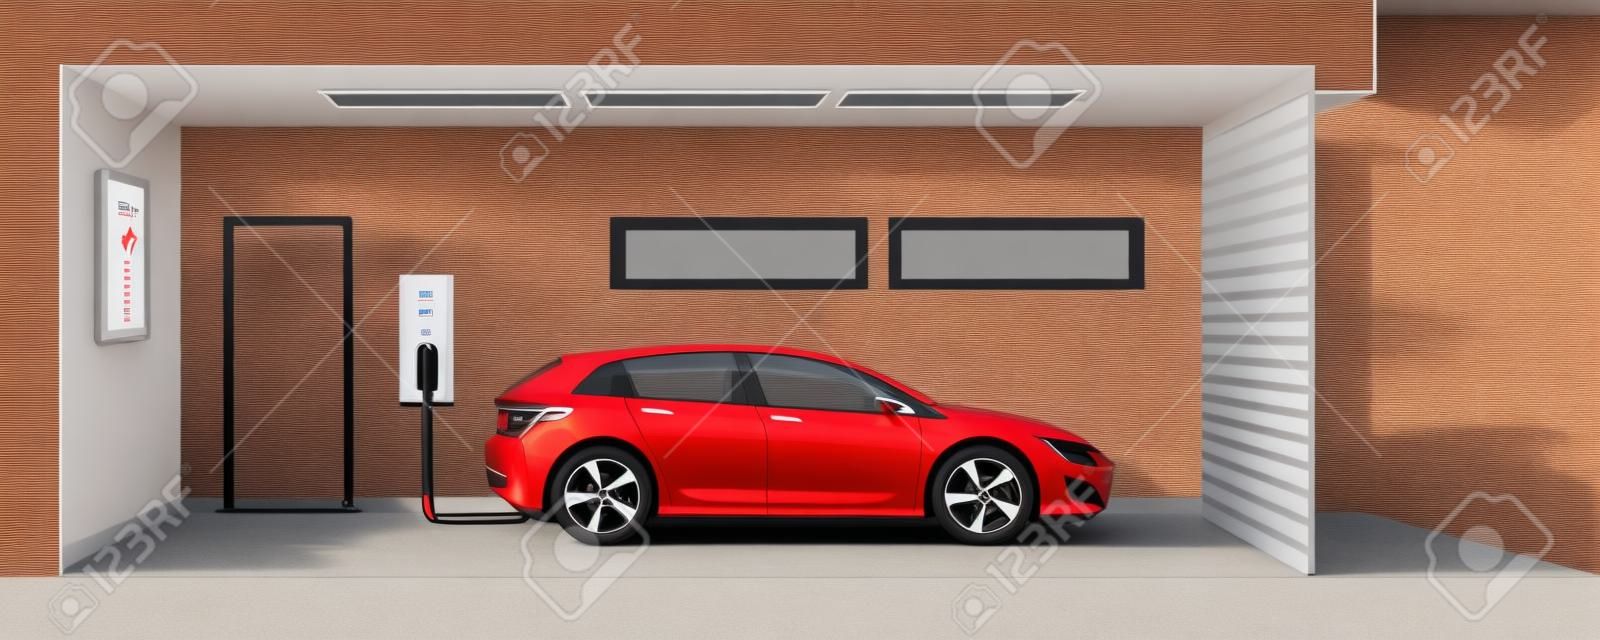 Ilustración plana de un coche eléctrico rojo de carga en el punto de estación de carga dentro de la casa de garaje. movilidad eléctrica doméstica concepto de e-inteligente de movimiento integrado.